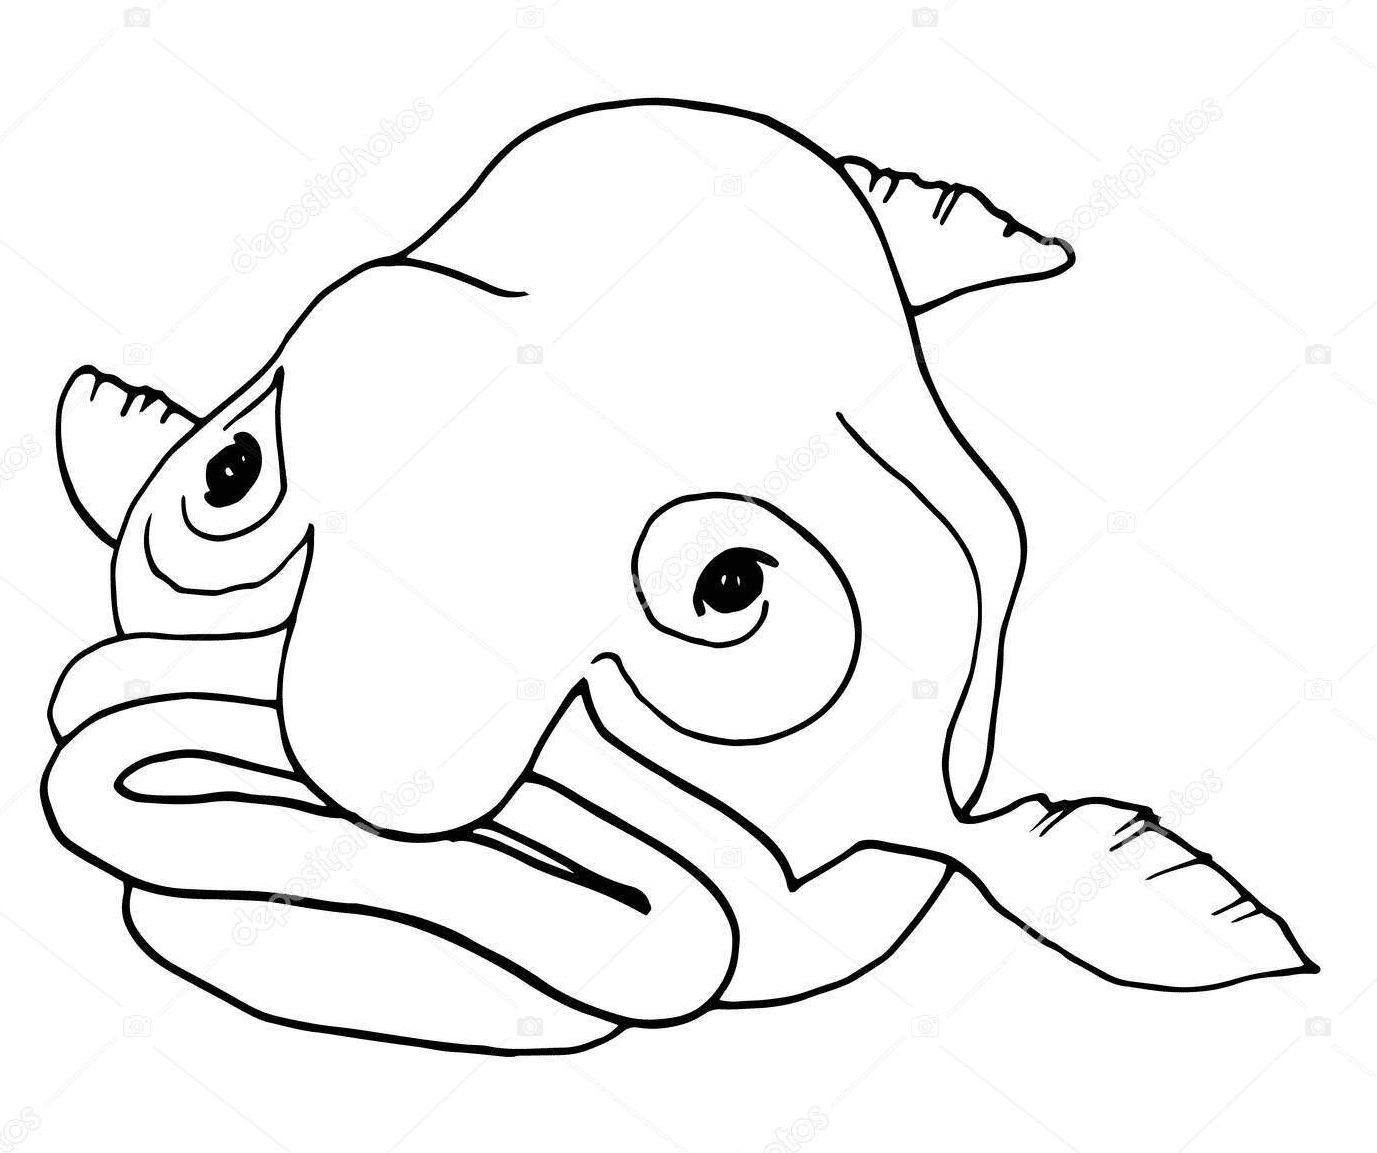 Een Blobfish van Blobfish